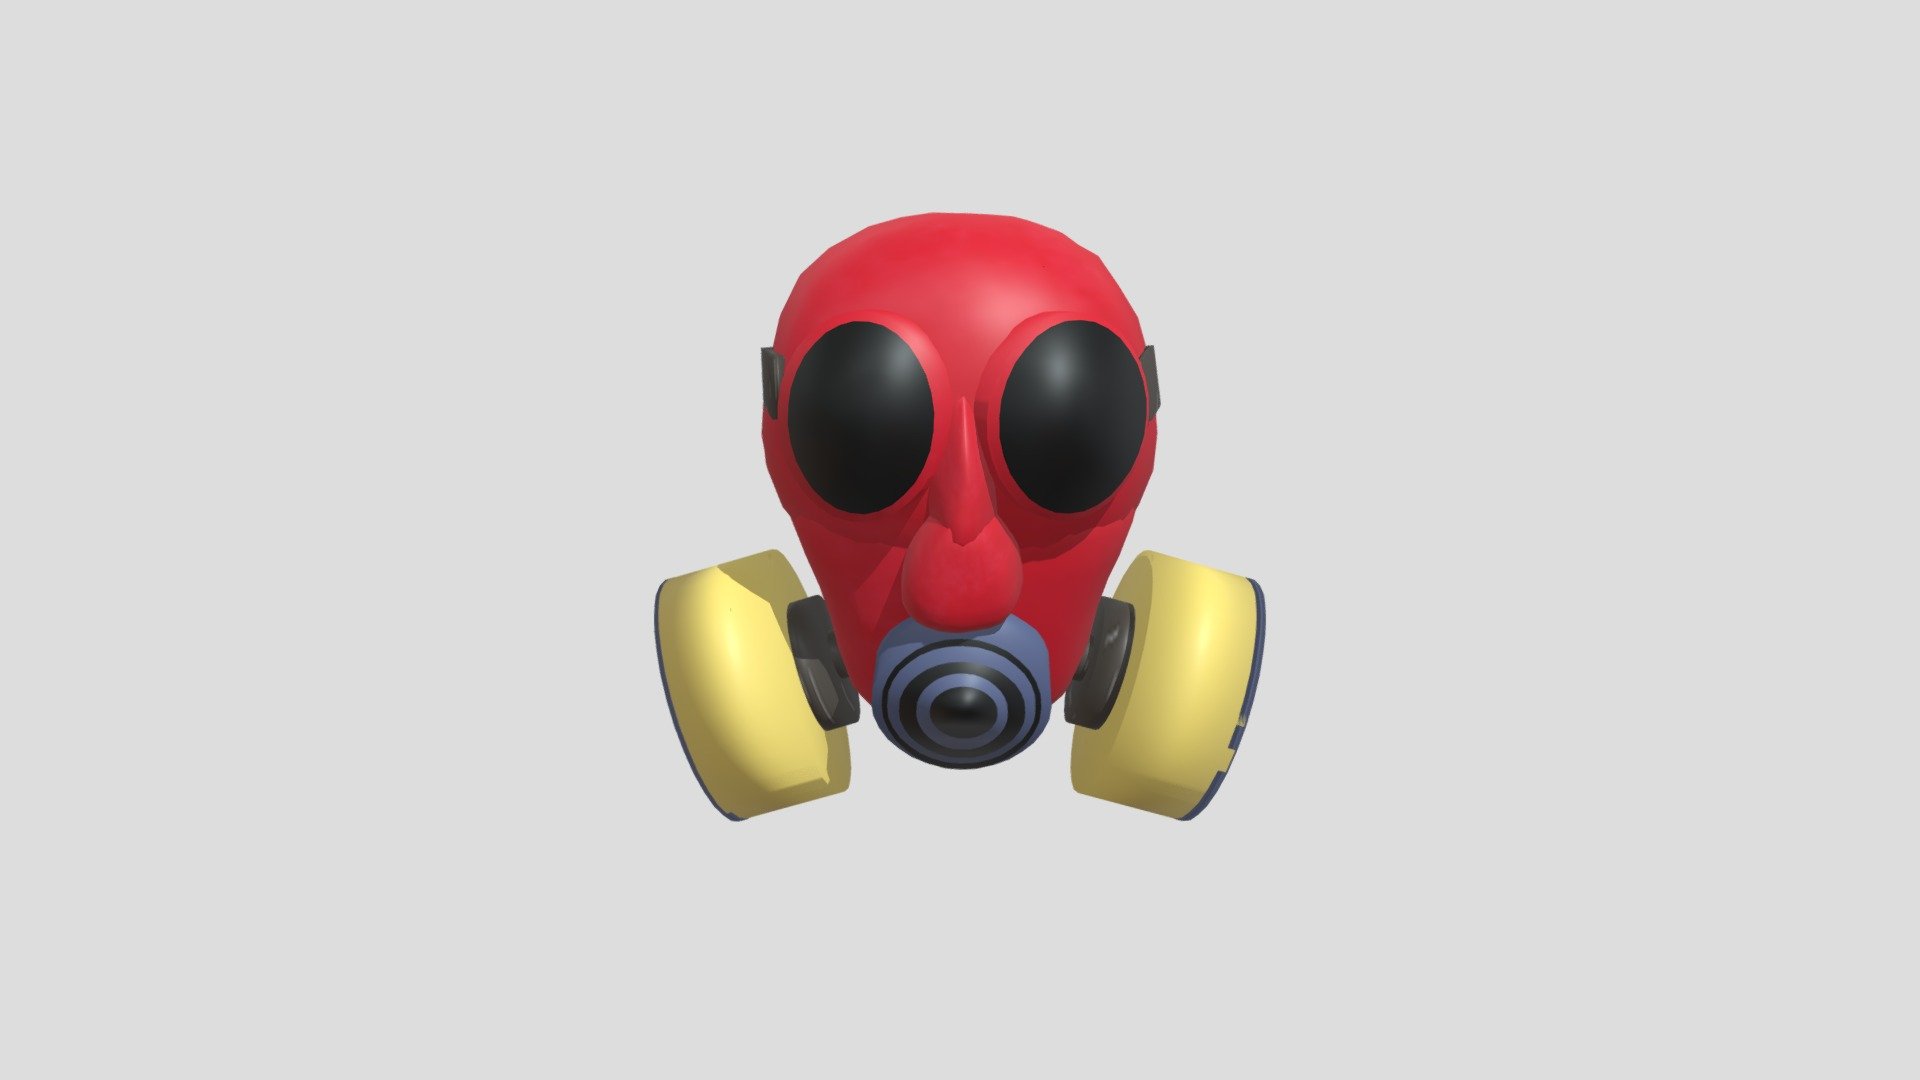 Poppy Playtime Chapter 3 Teaser: Gasmask - Download Free 3D model